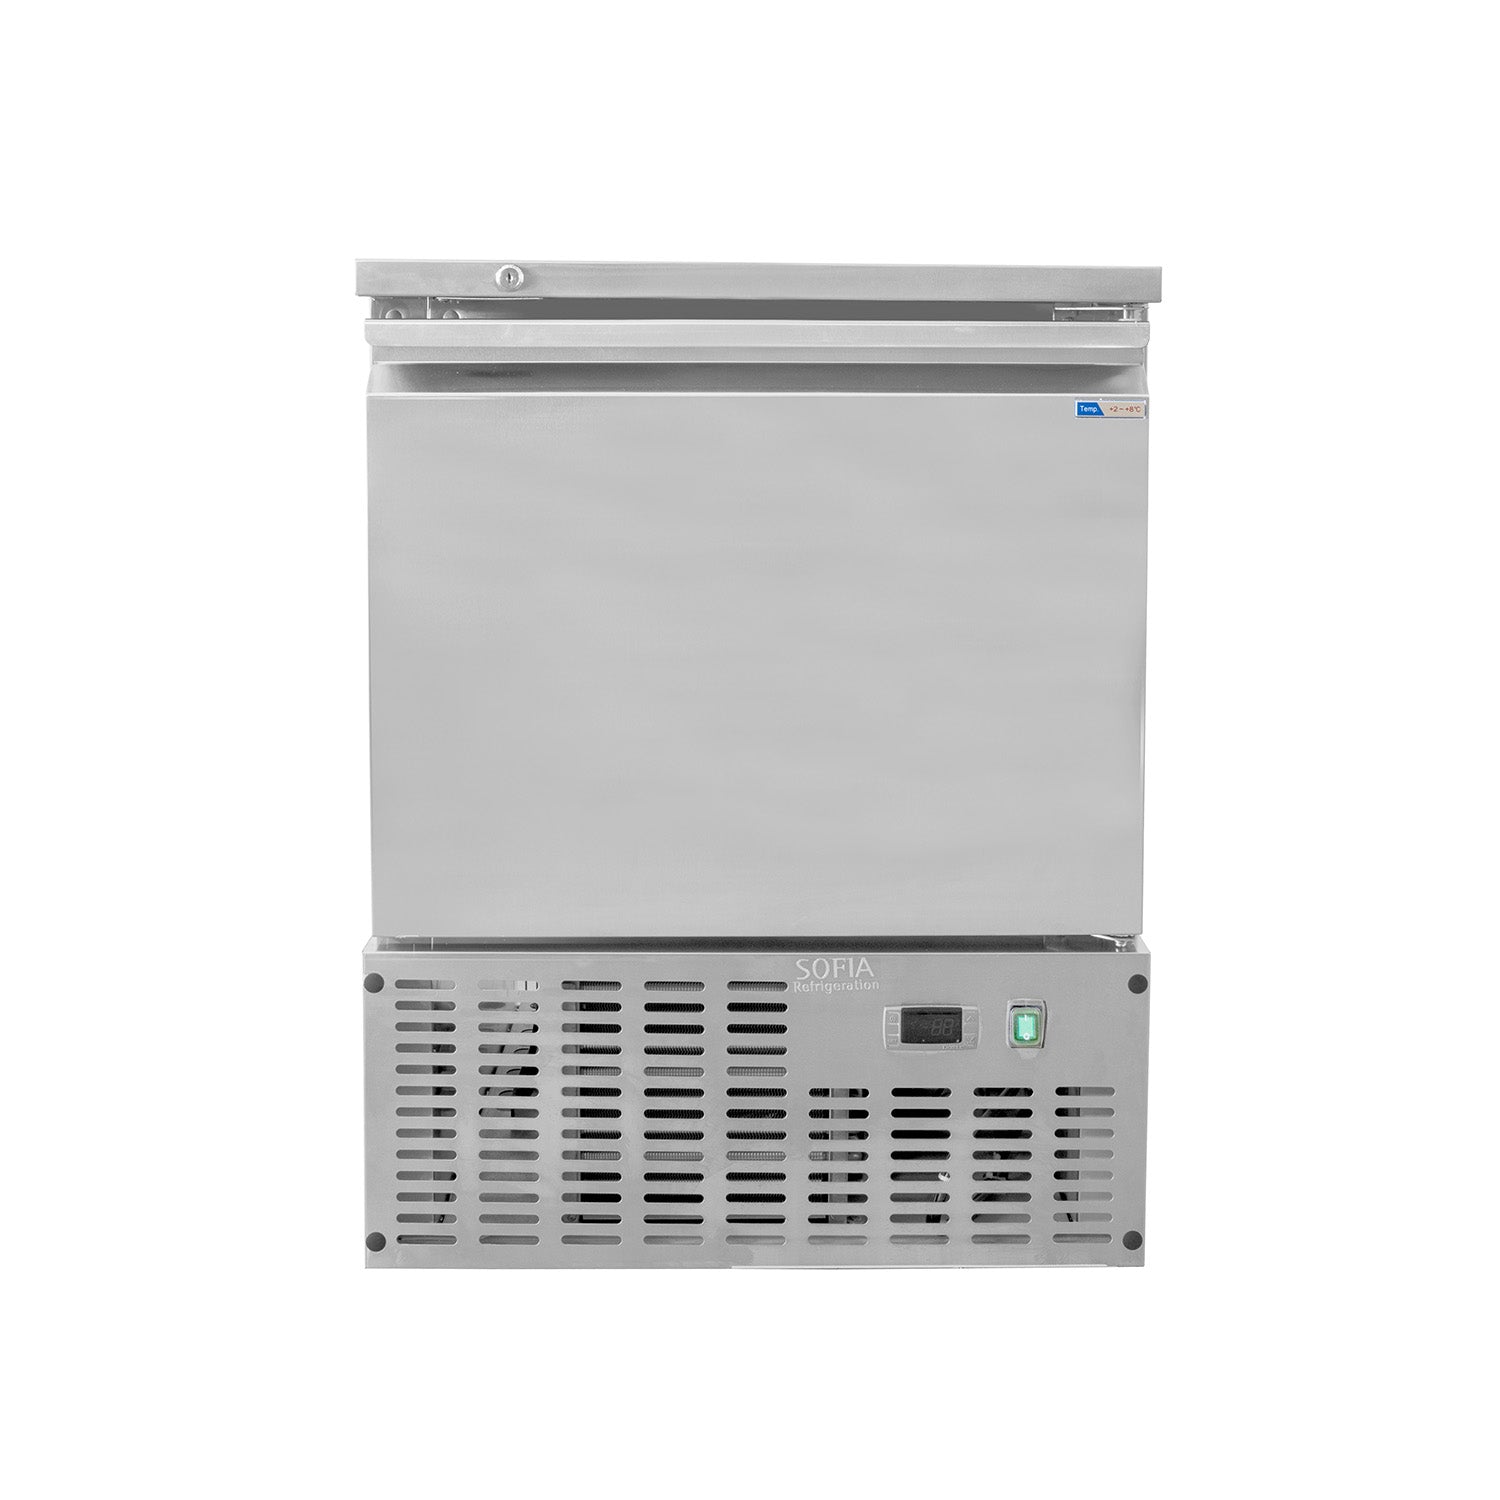 SOFUC-65 FE, Under Counter Single Door Freezer